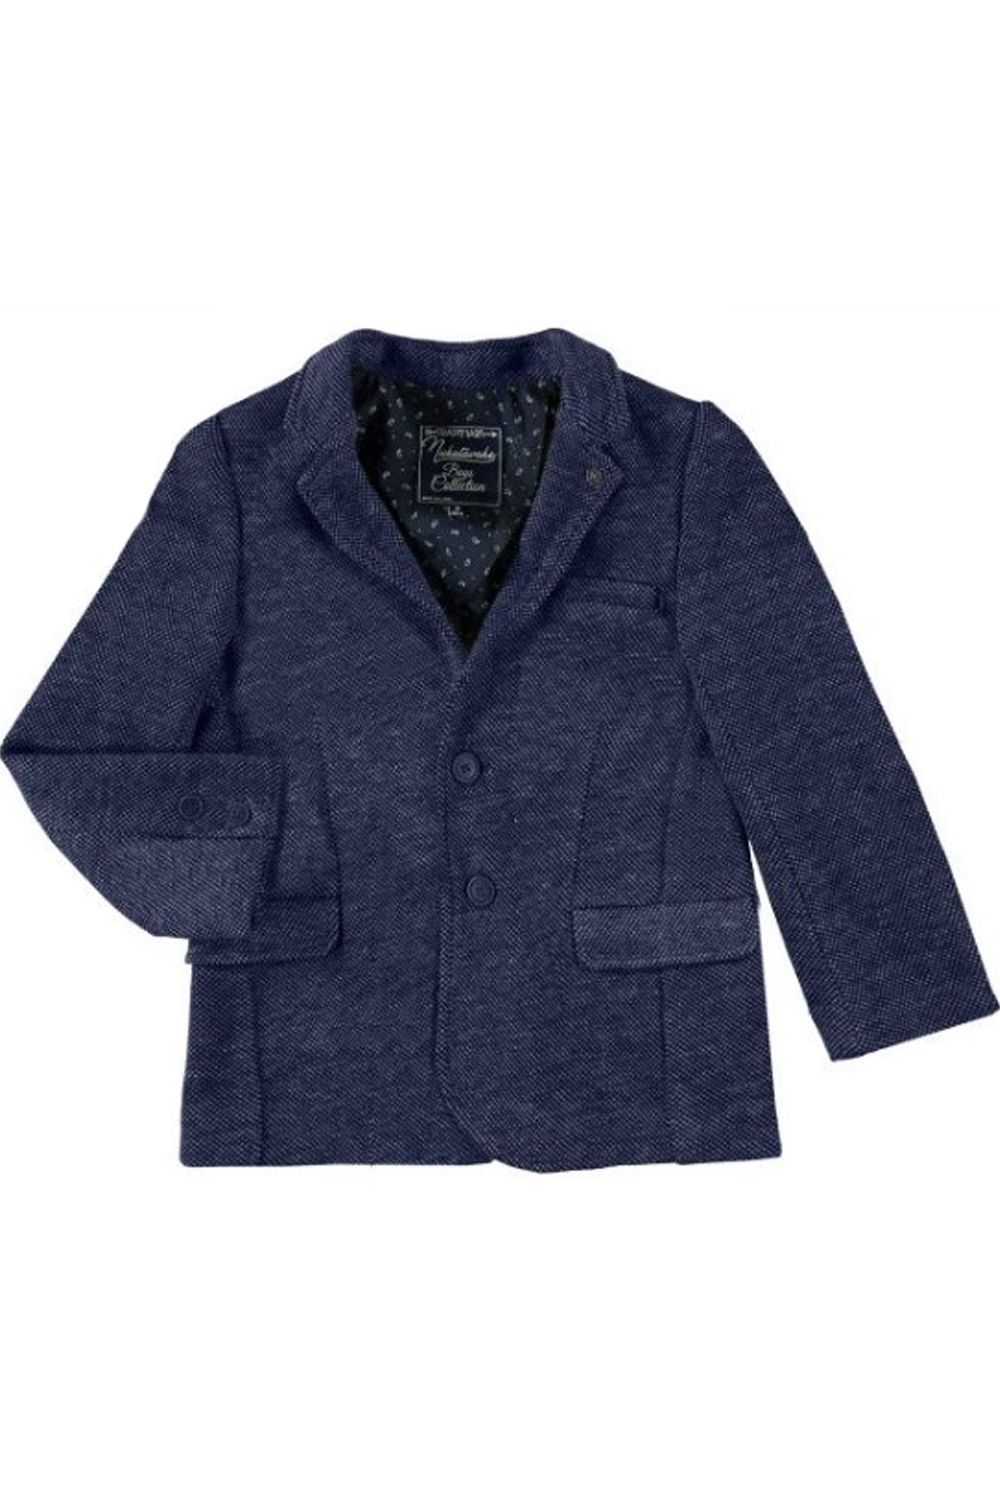 Пиджак Mayoral, размер 157, цвет синий